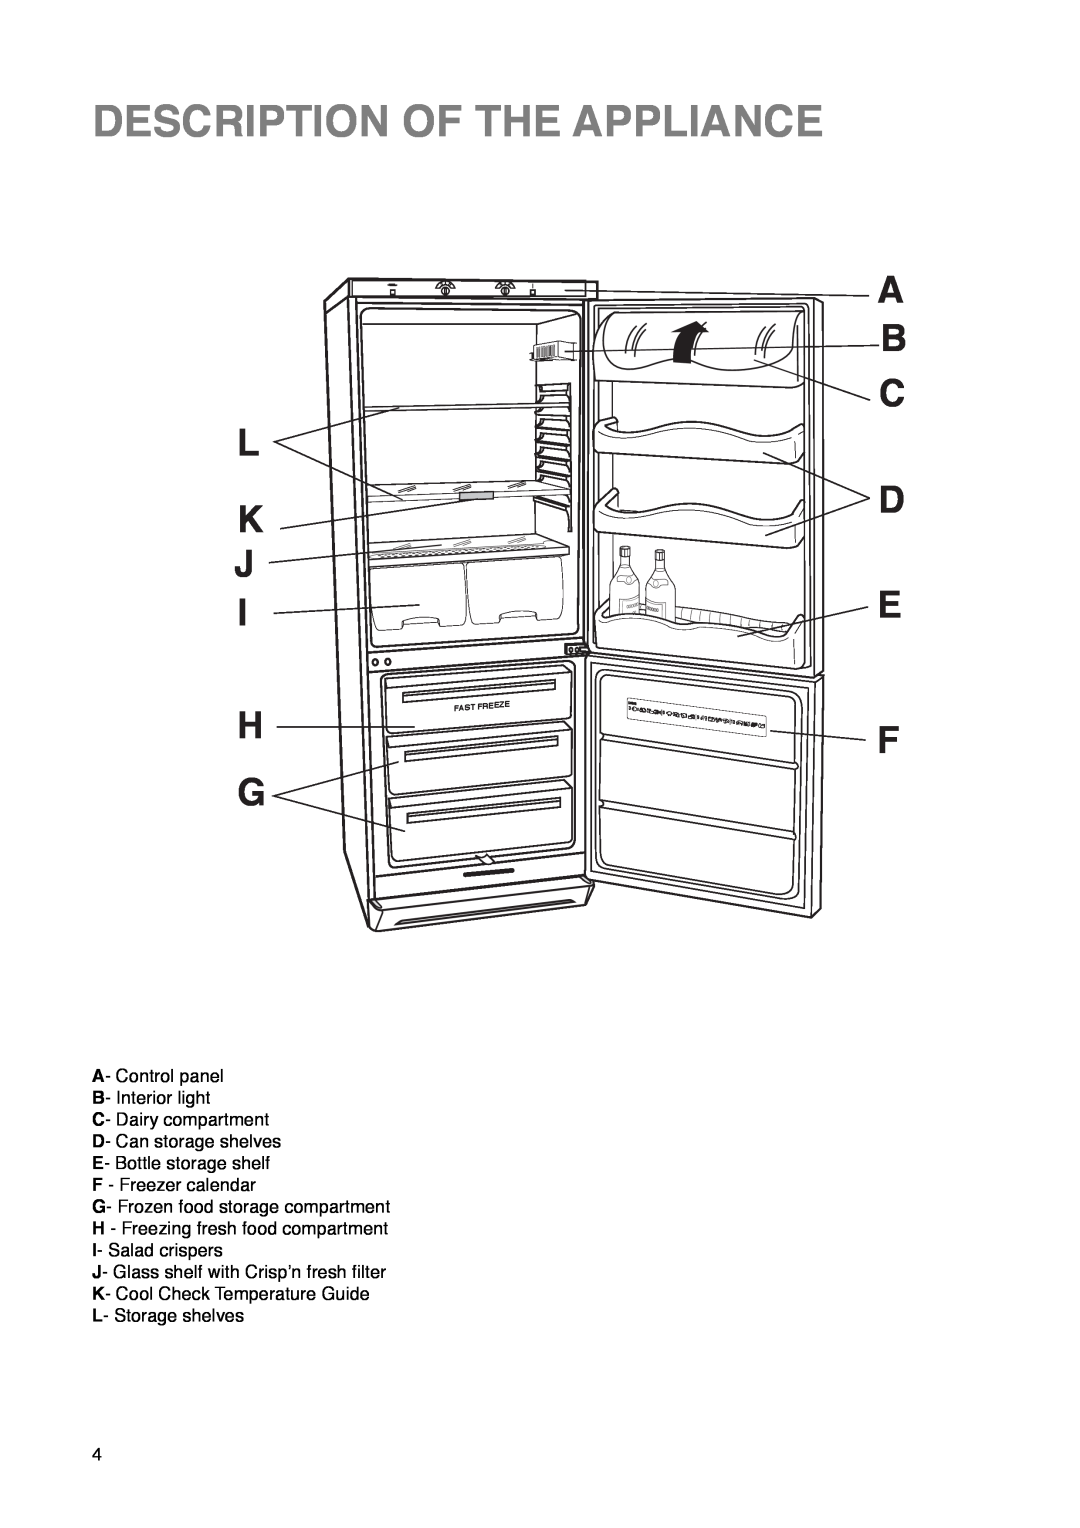 Zanussi ZKR 60/30 R manual Description Of The Appliance, L K J, A B C D E F 